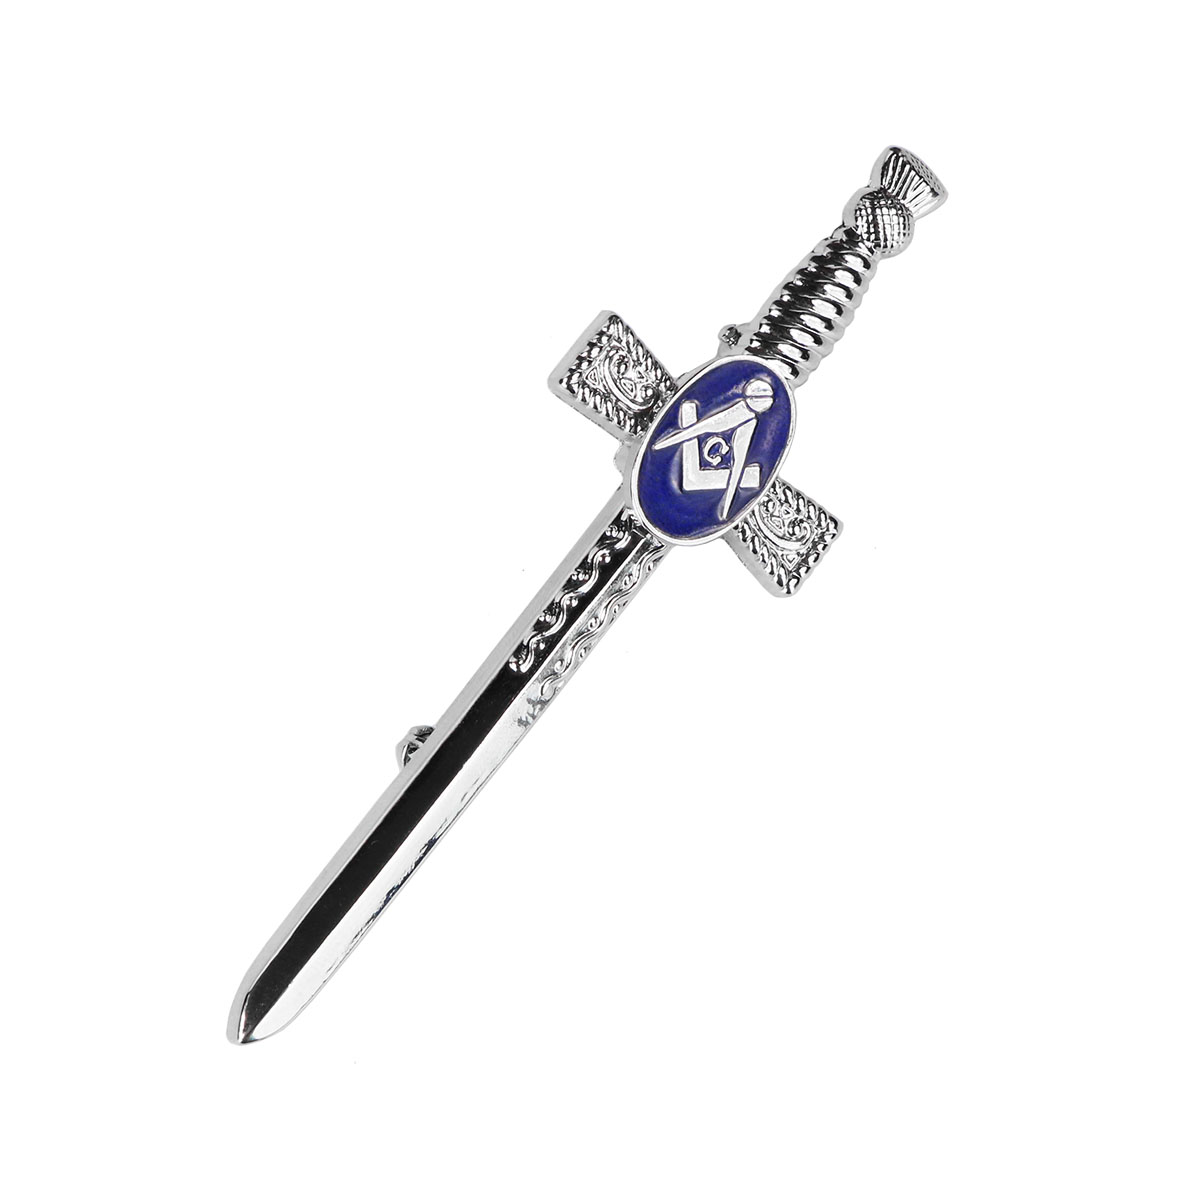 Kilt Pins Scottish Masonic Kilt Pin/Scottish Heritage Kilt Pin Chrome Finish 